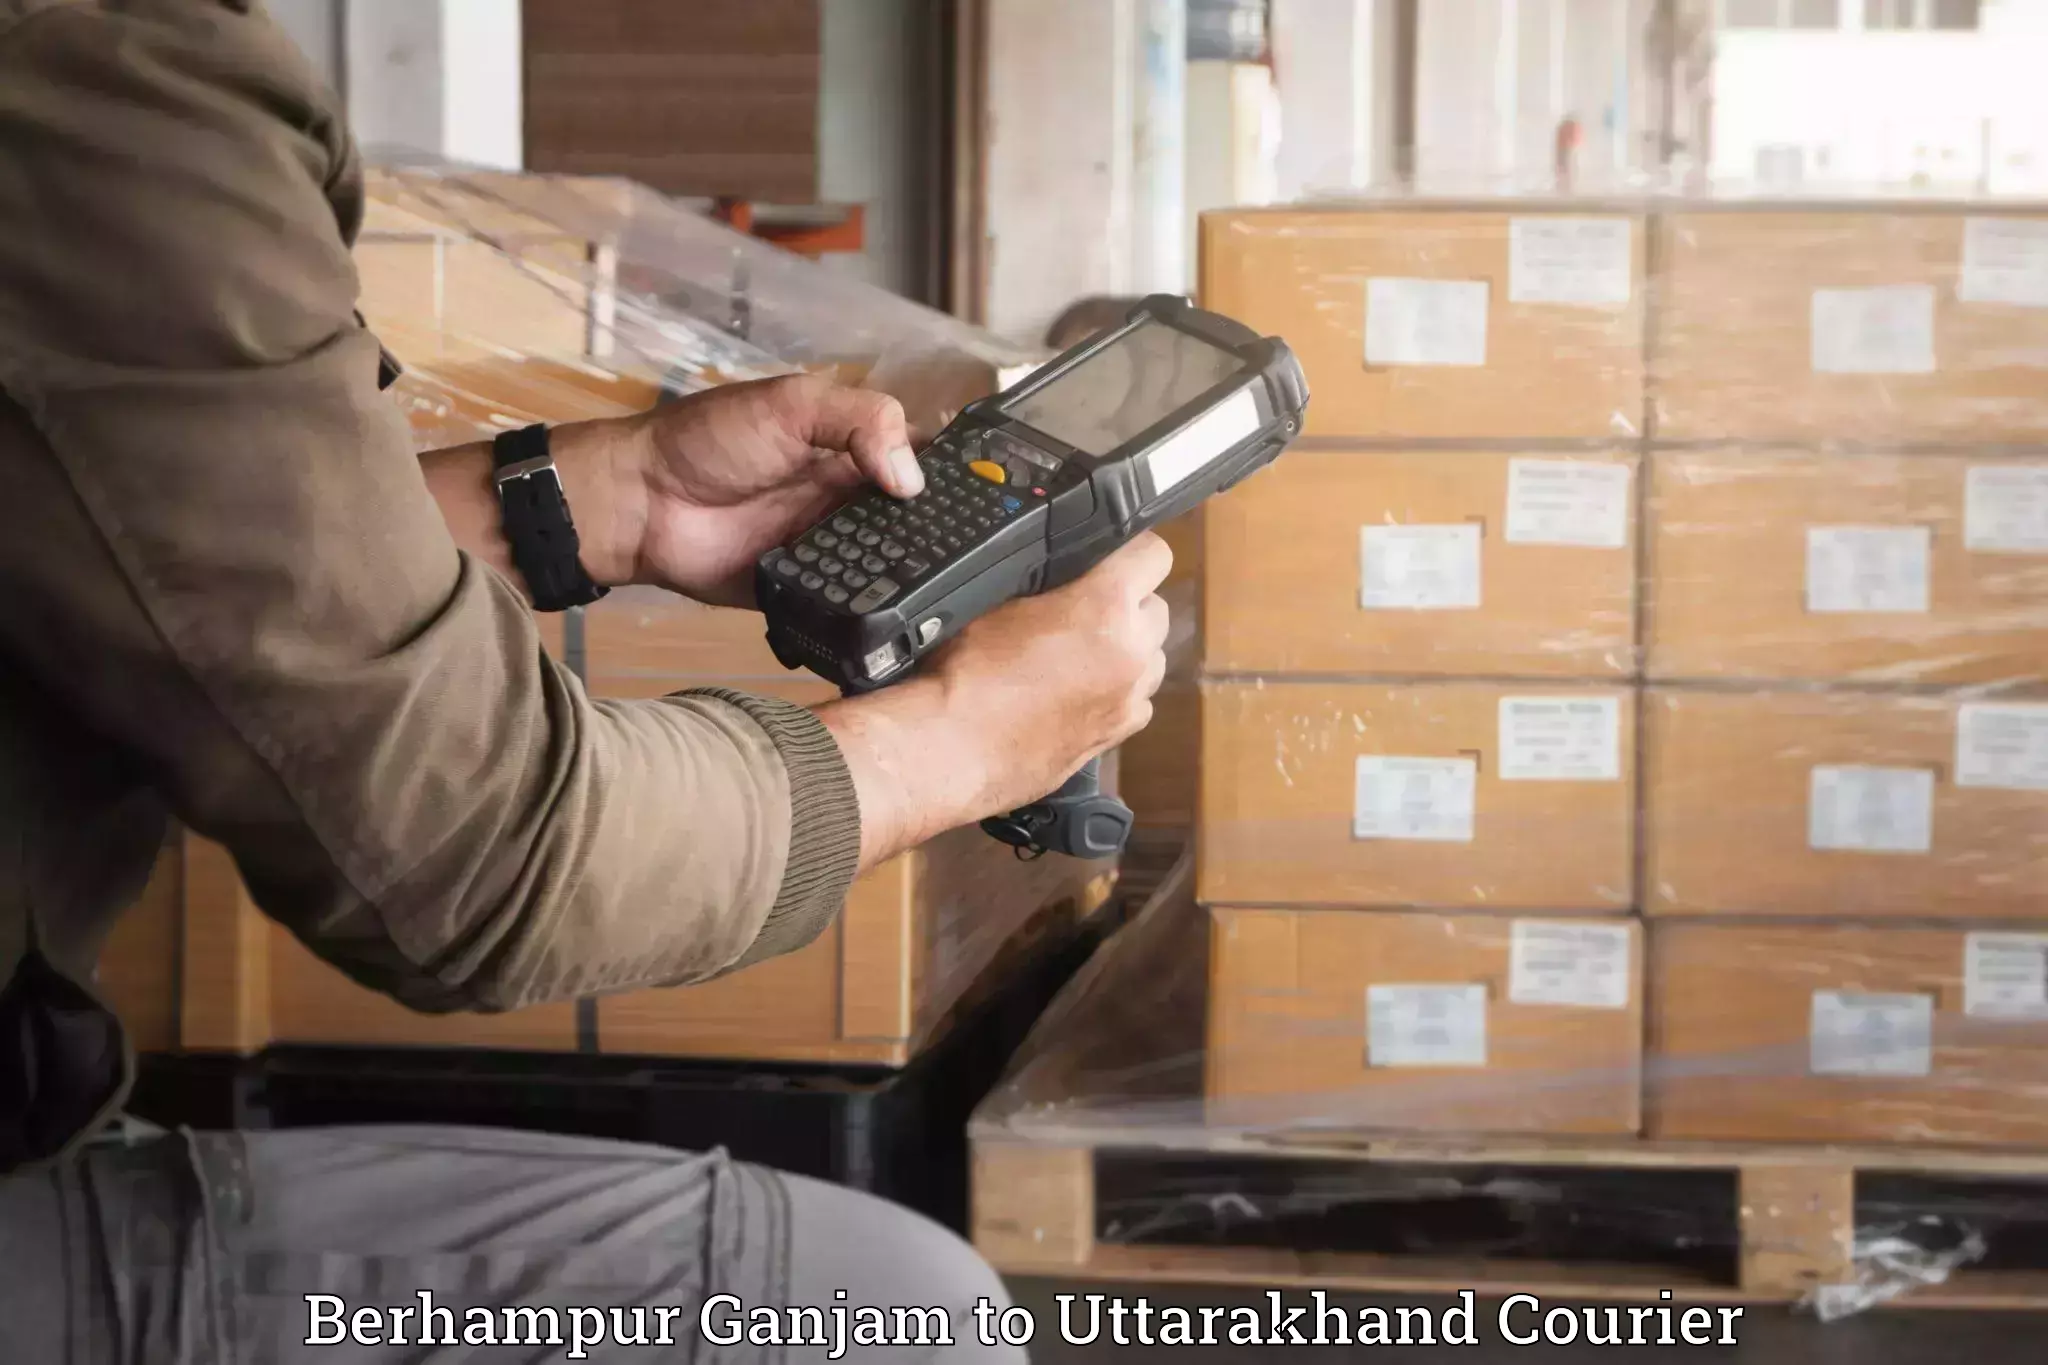 Household moving experts Berhampur Ganjam to Didihat